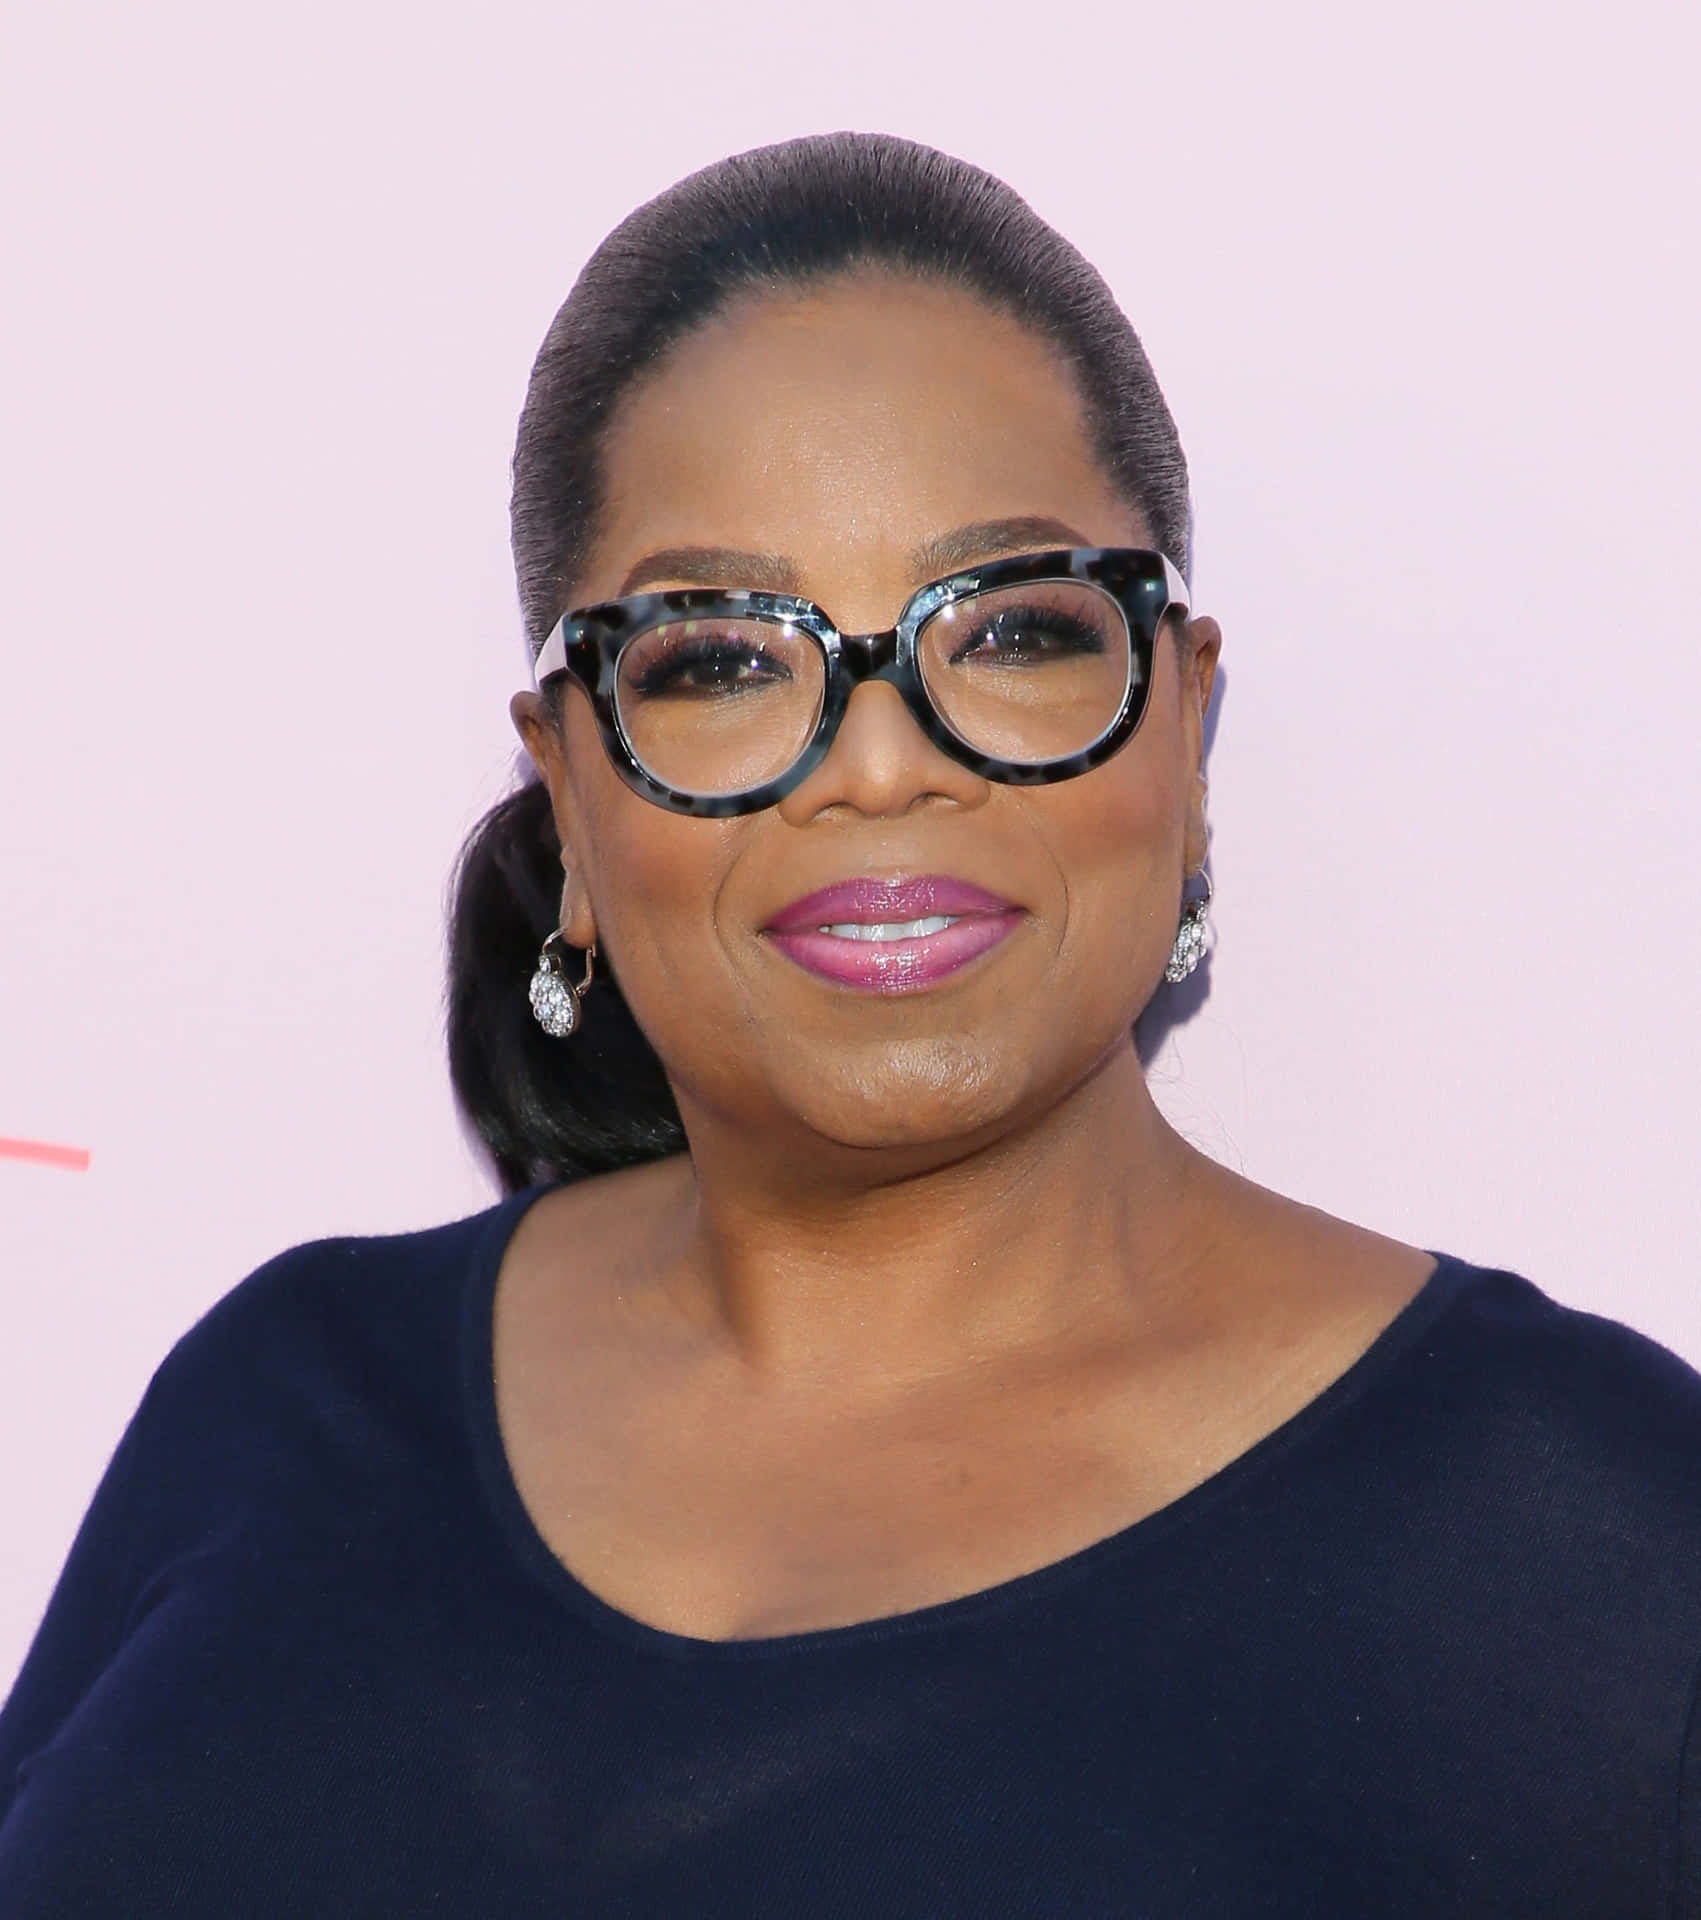 Prominentebild Von Oprah Winfrey